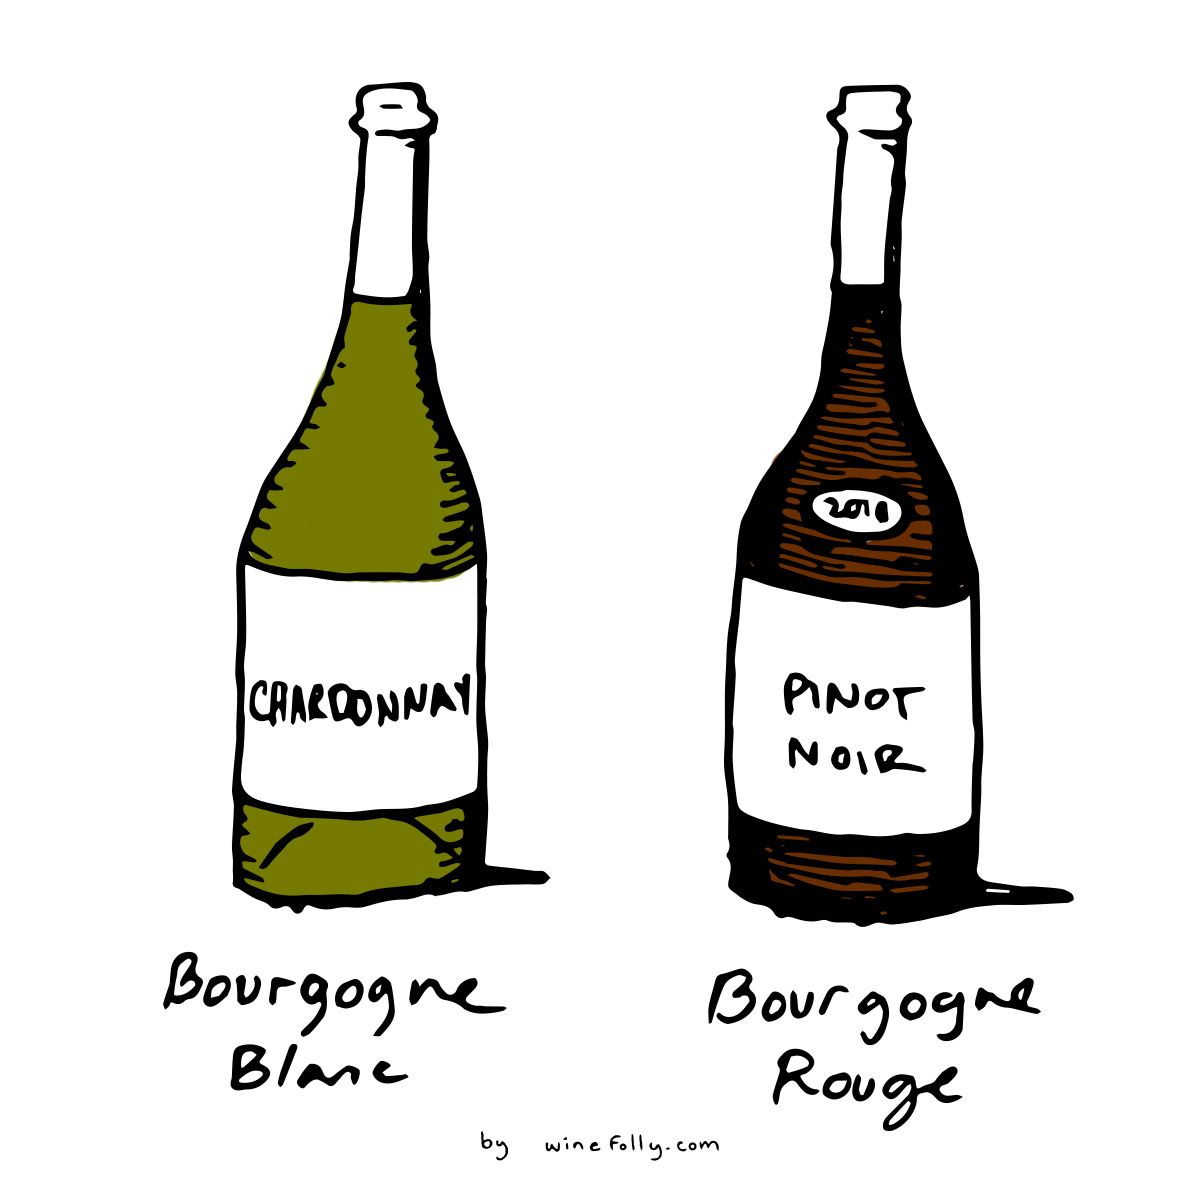 שרדונה ופינו נואר הם שני הענבים העיקריים של יינות בורגן (בורגונדי) בלאן ורוז 